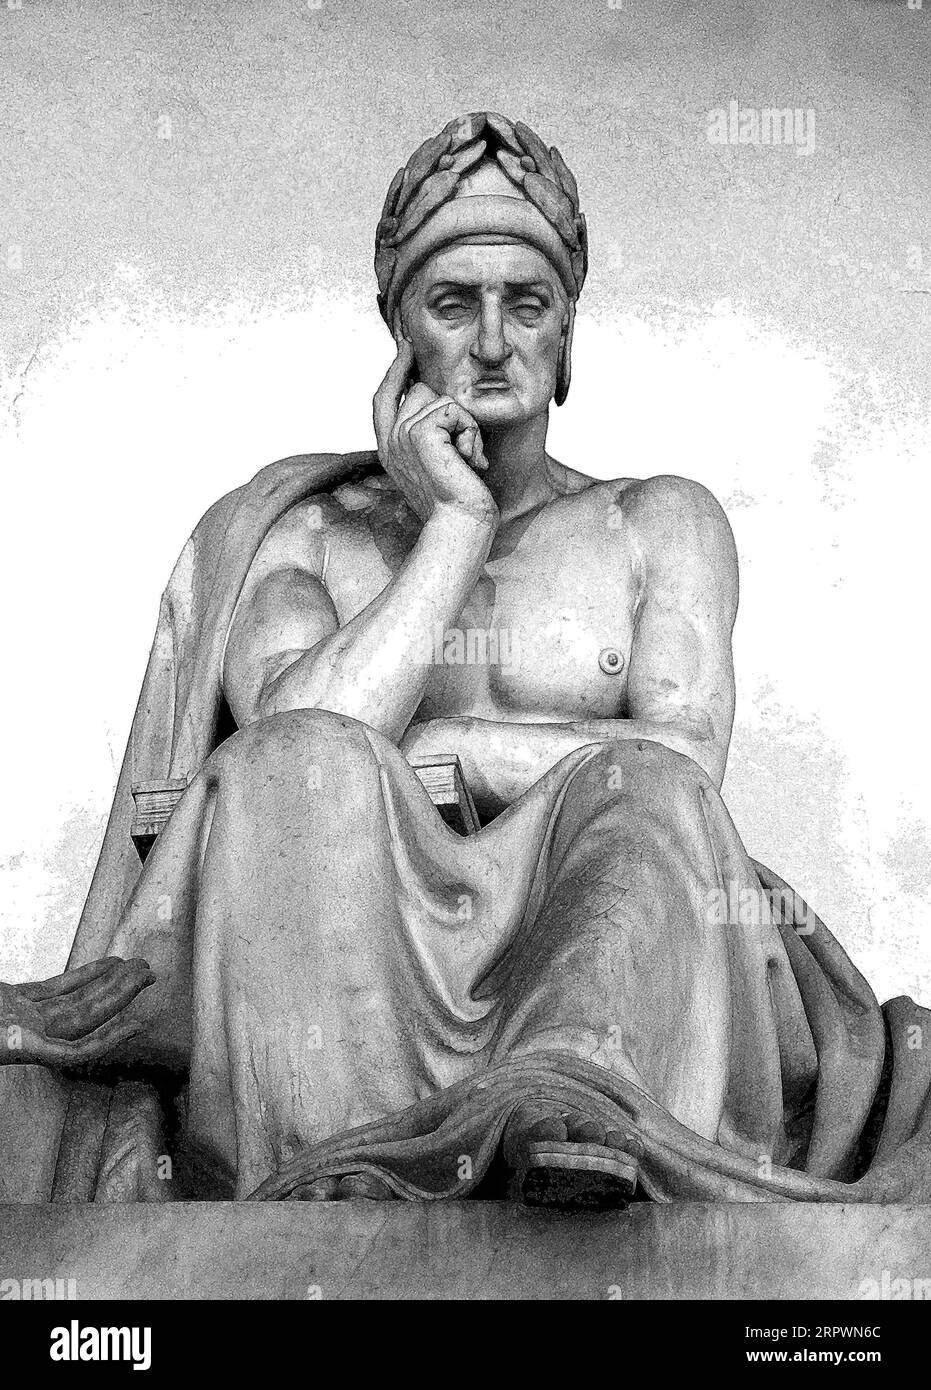 Una statua in marmo del 1830 del poeta italiano Dante Alighieri (colorata digitalmente), scolpita da Stefano Ricci, a Firenze (vedi informazioni aggiuntive). Foto Stock